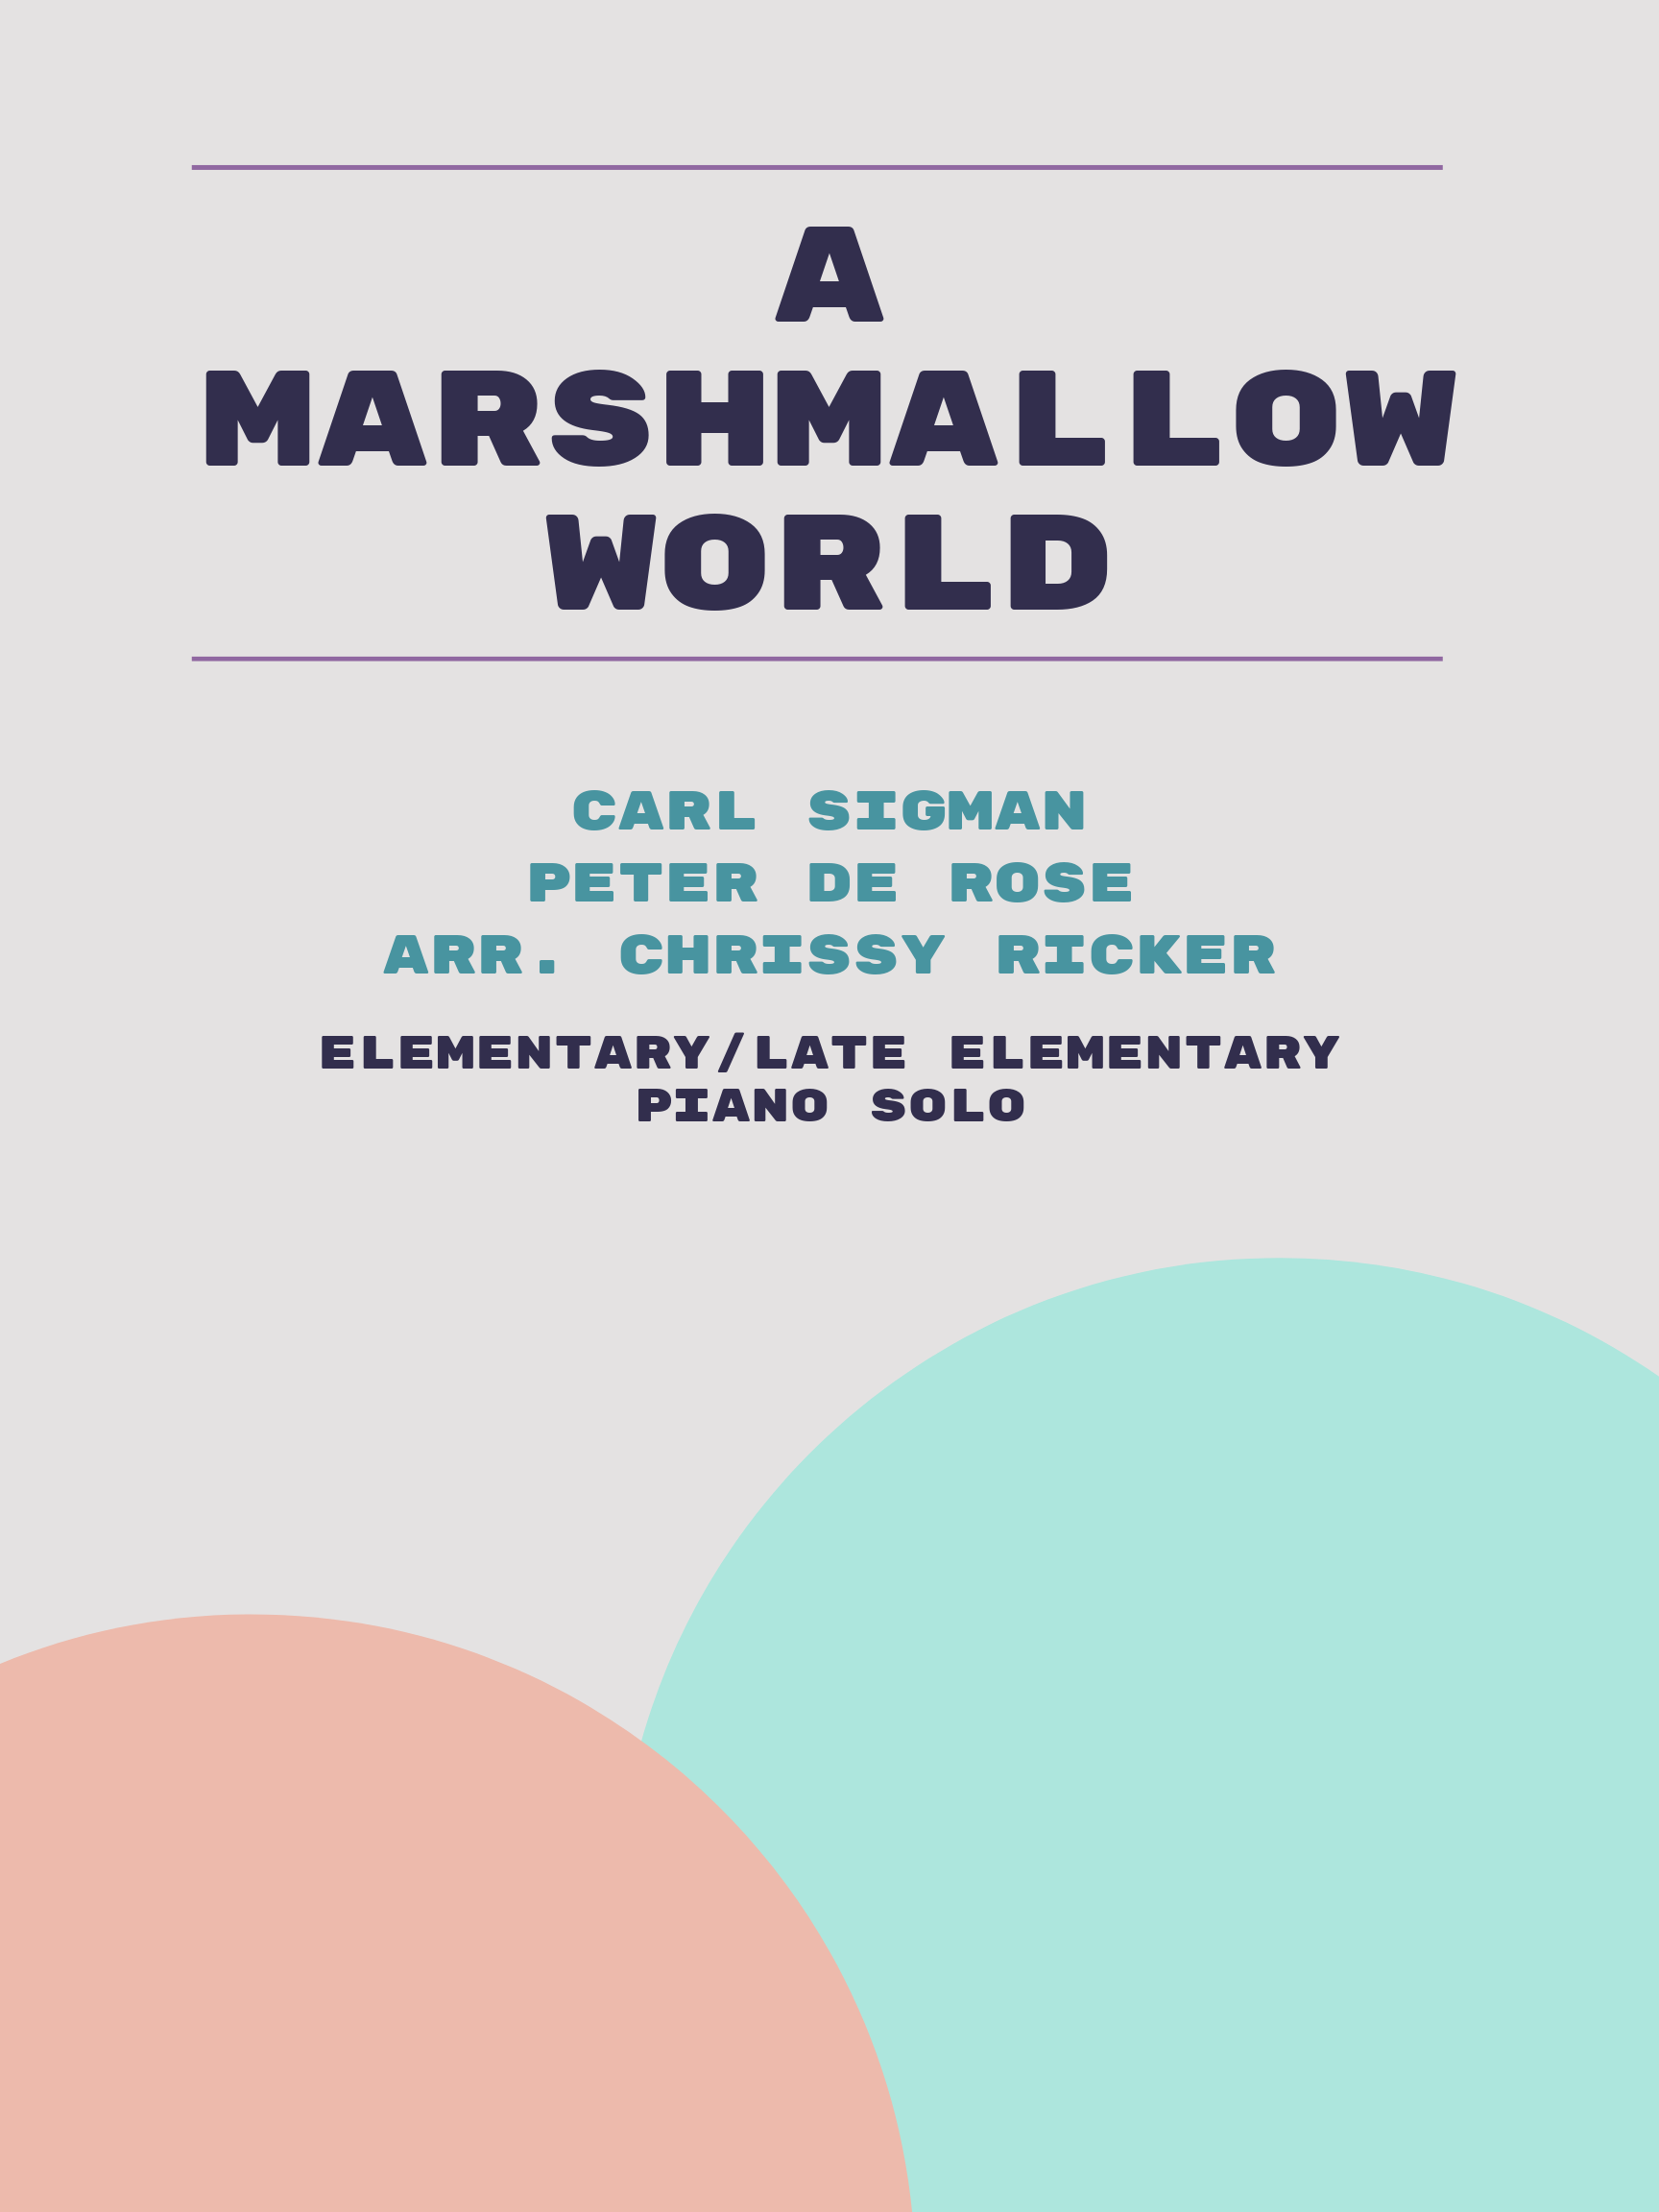 A Marshmallow World by Carl Sigman, Peter De Rose